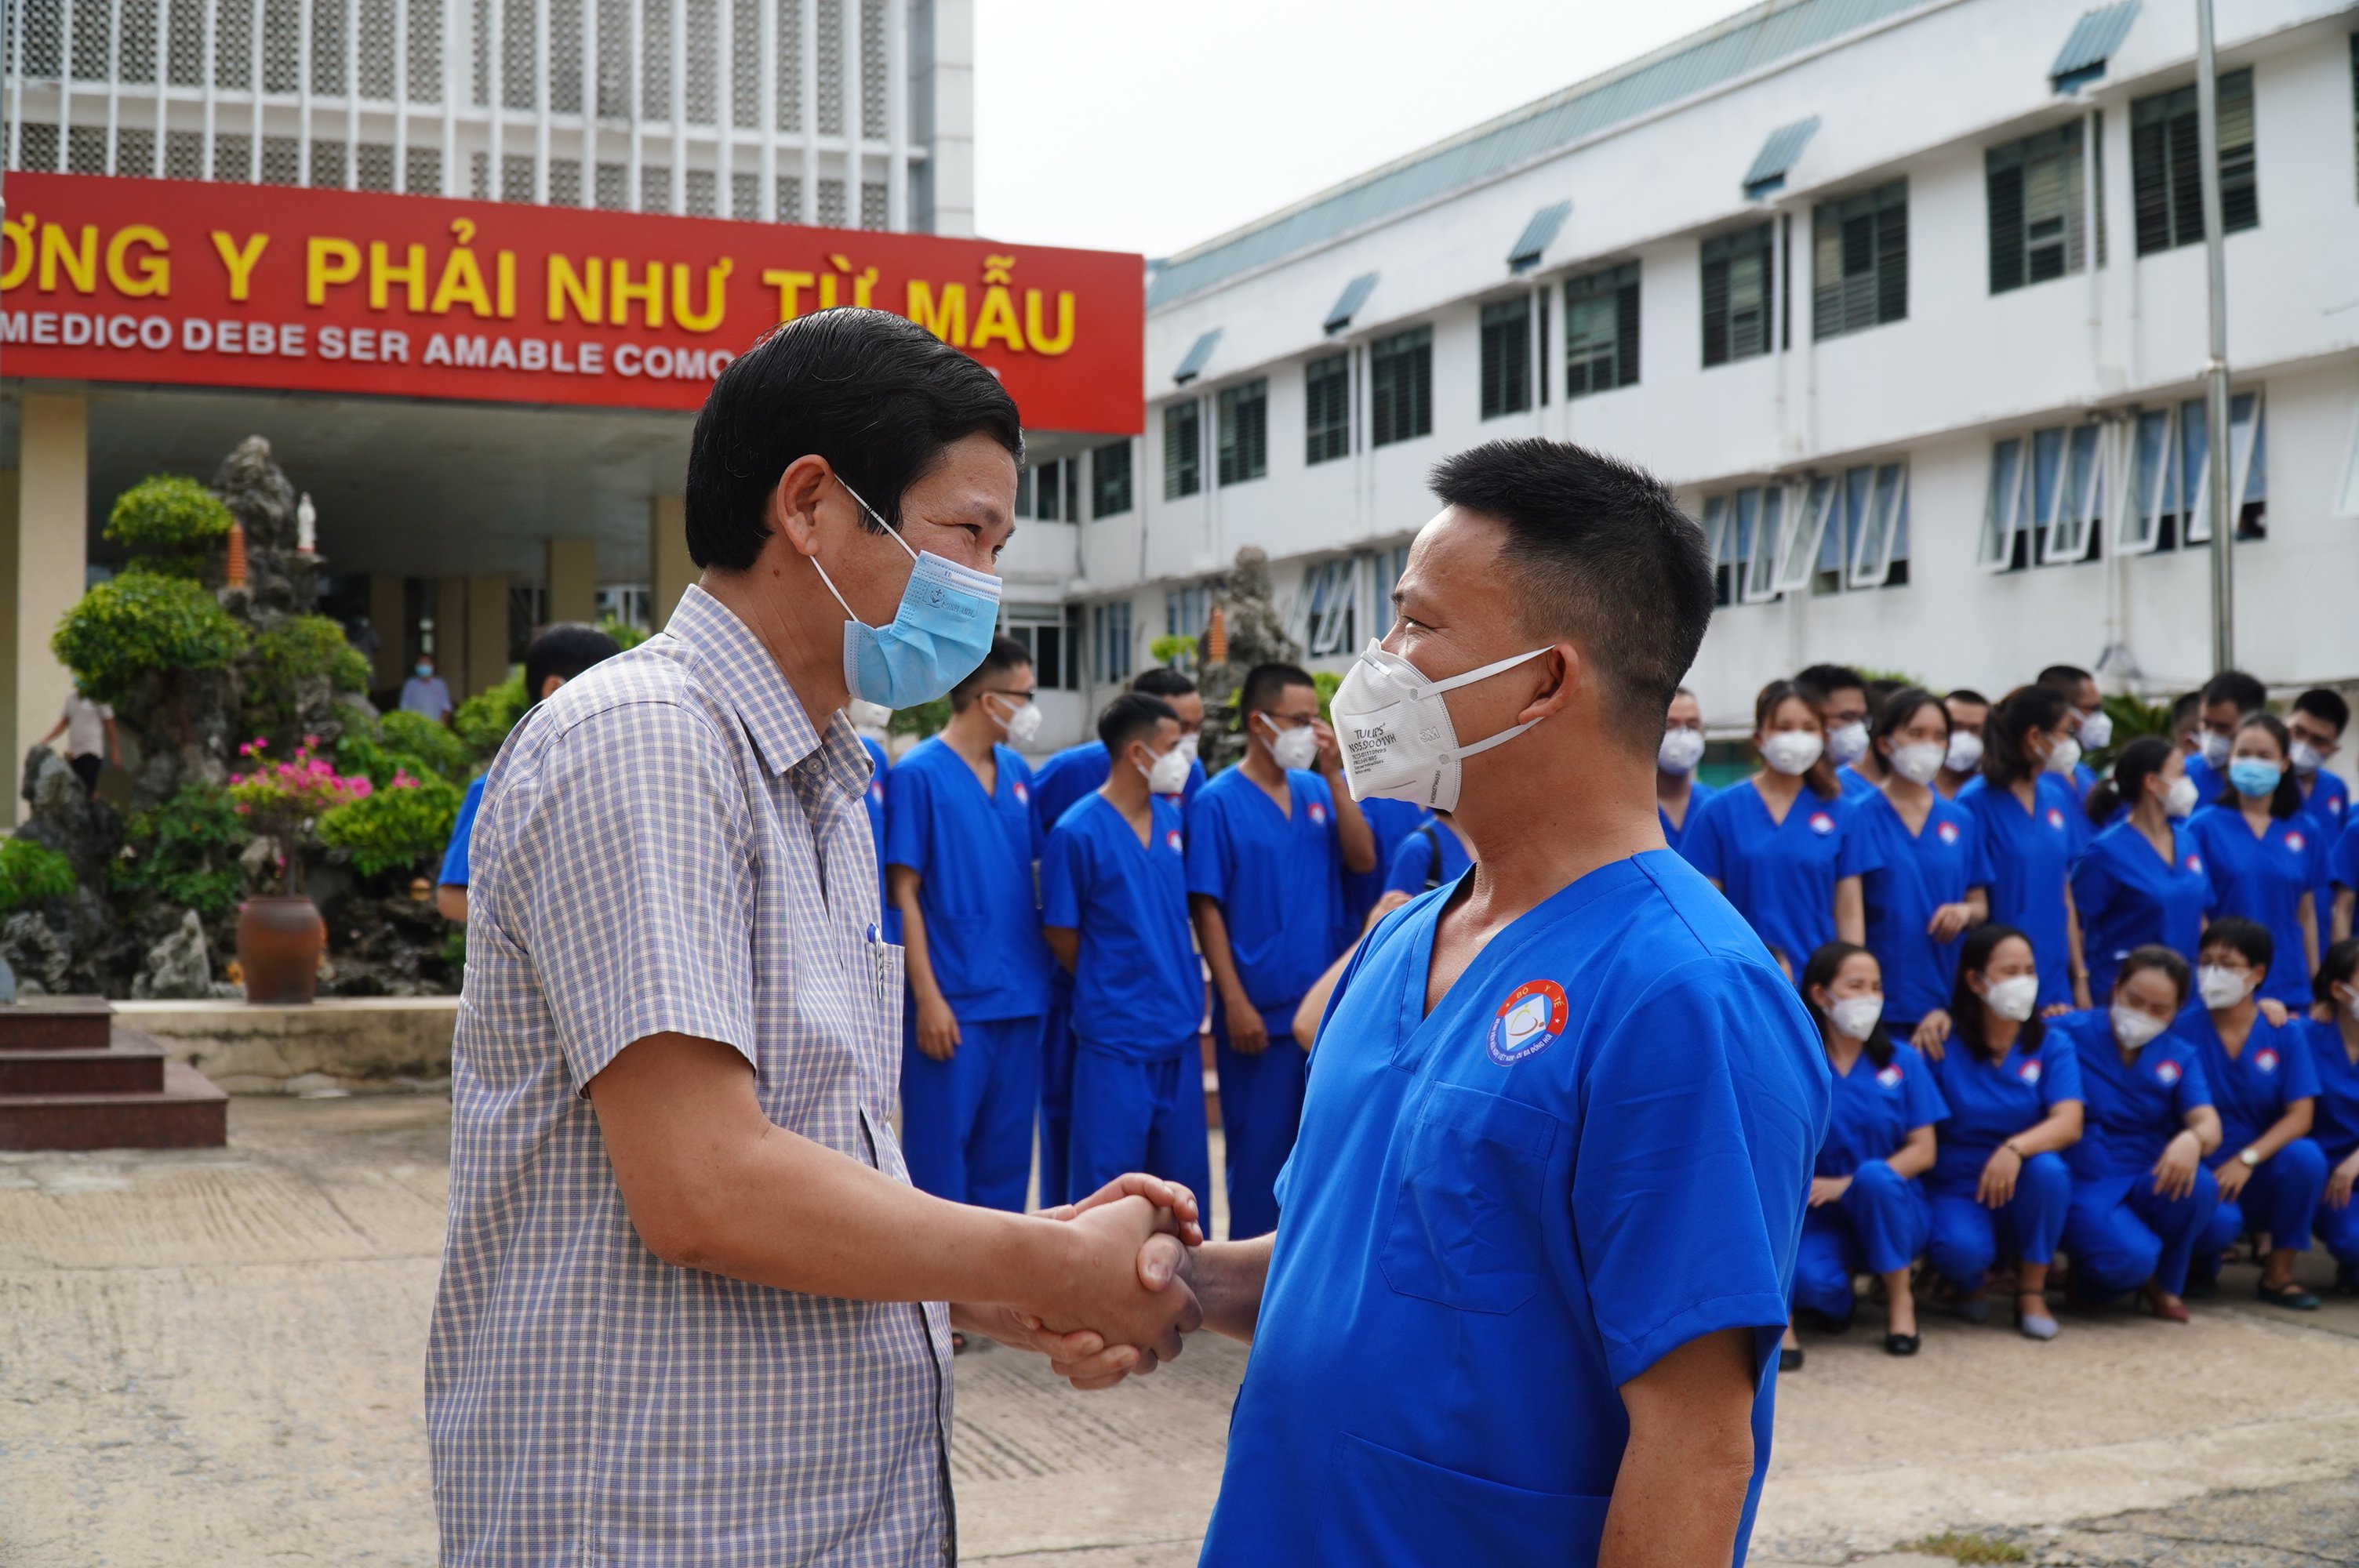 Đồng chí Hồ An Phong, Phó Chủ tịch UBND tỉnh chúc các y bác sỹ lên đường bình an, cùng nhân dân các tỉnh phía Nam sớm đẩy lùi dịch bệnh.